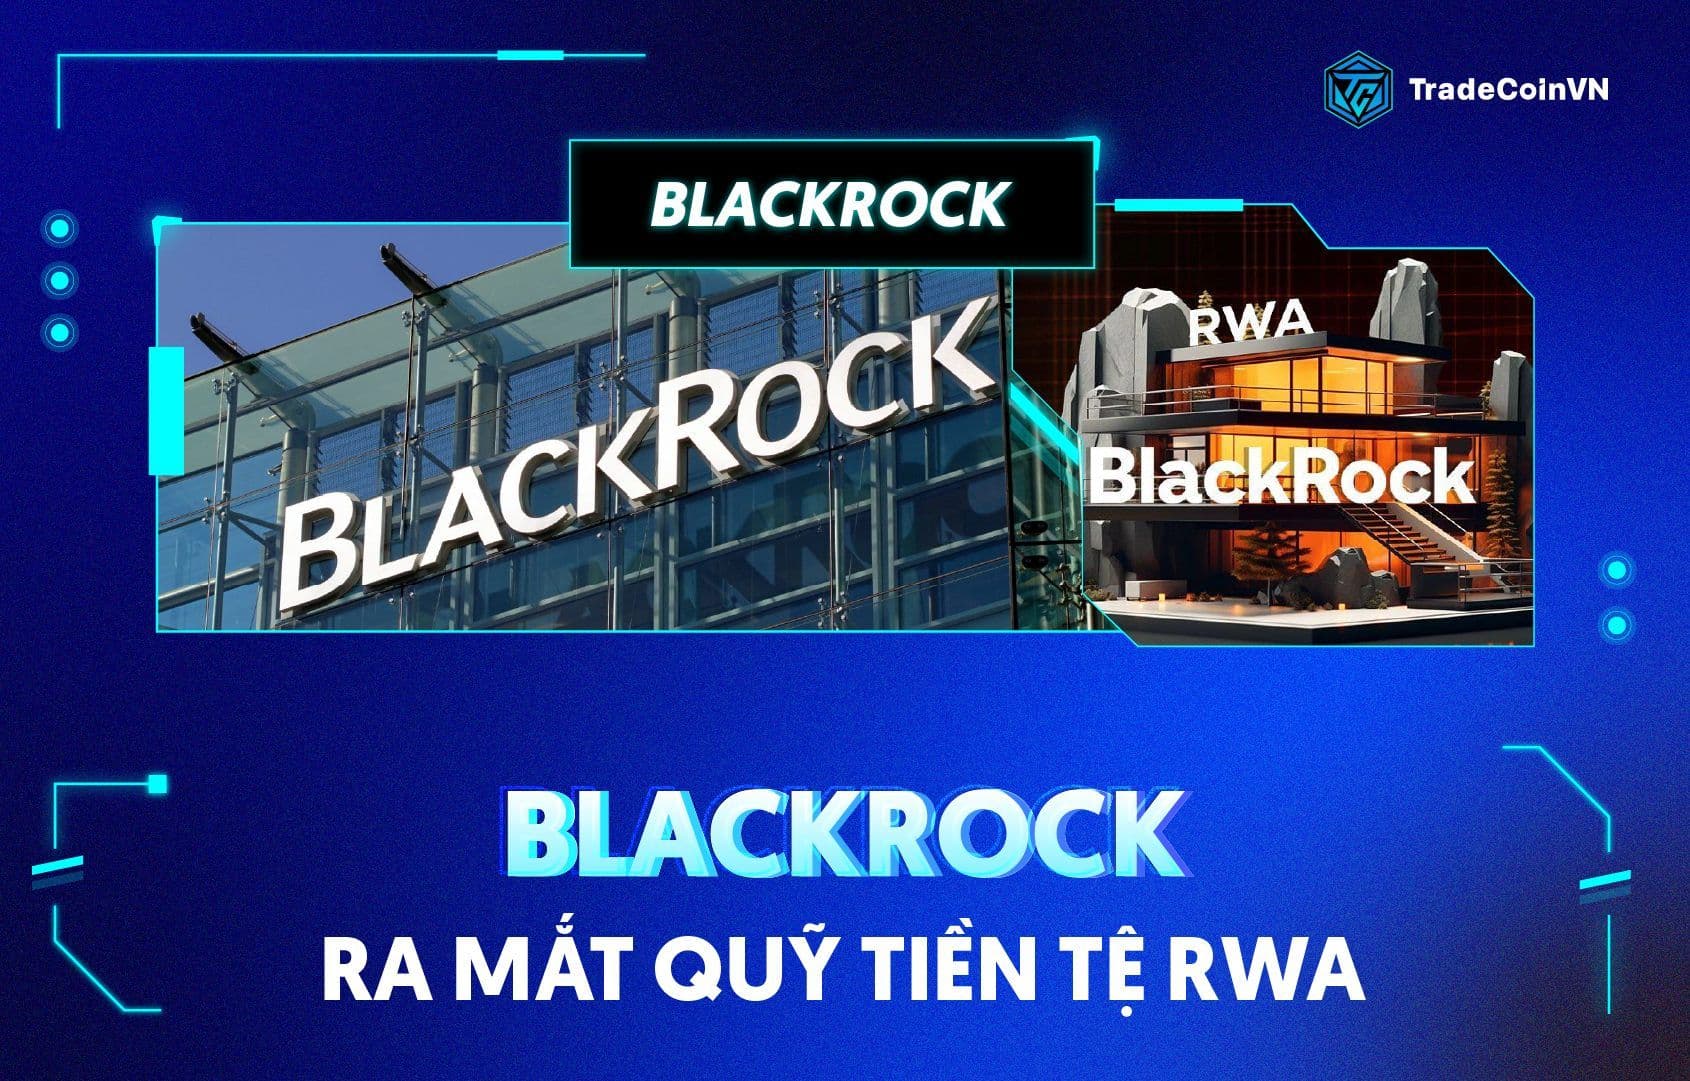 BlackRock ra mắt quỹ tiền tệ BUIDL trên Ethereum, liệu RWA sẽ bùng nổ?